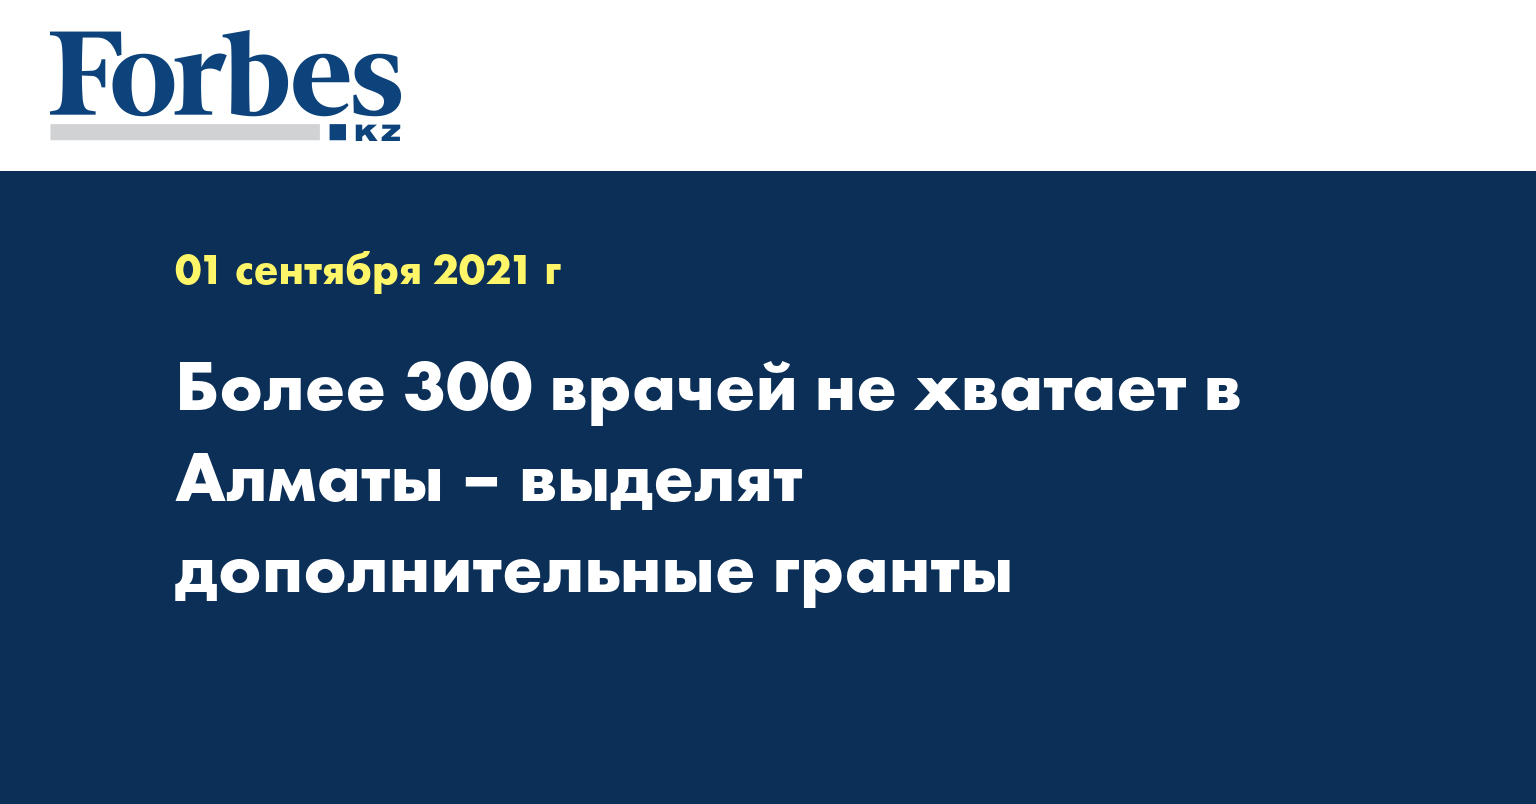 Более 300 врачей не хватает в Алматы – выделят дополнительные гранты